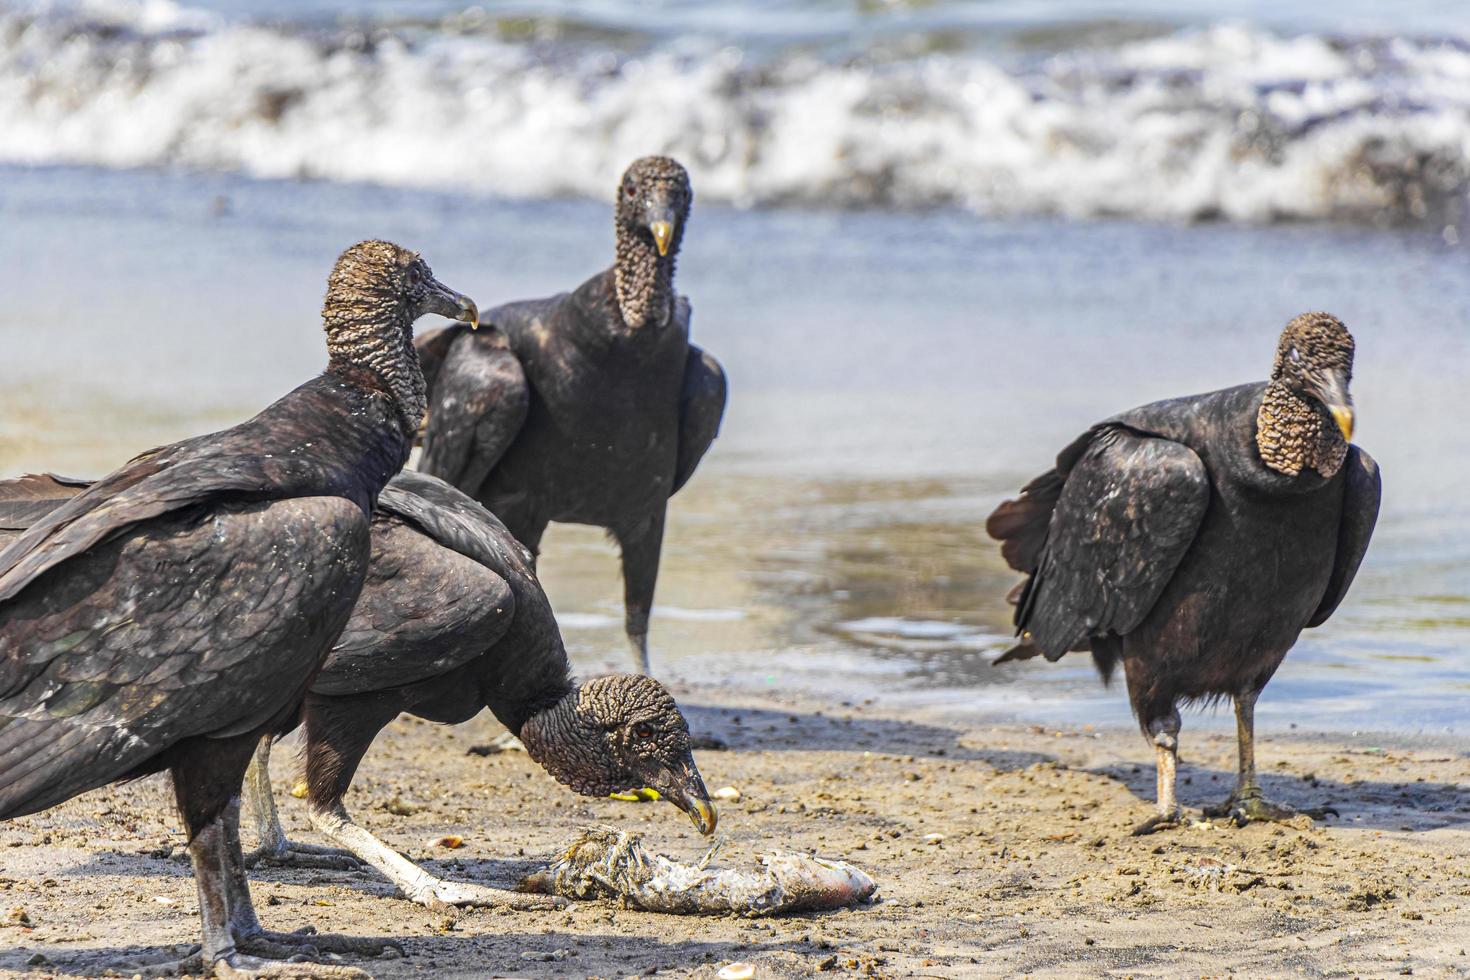 les vautours noirs tropicaux mangent des carcasses de poisson rio de janeiro au brésil. photo